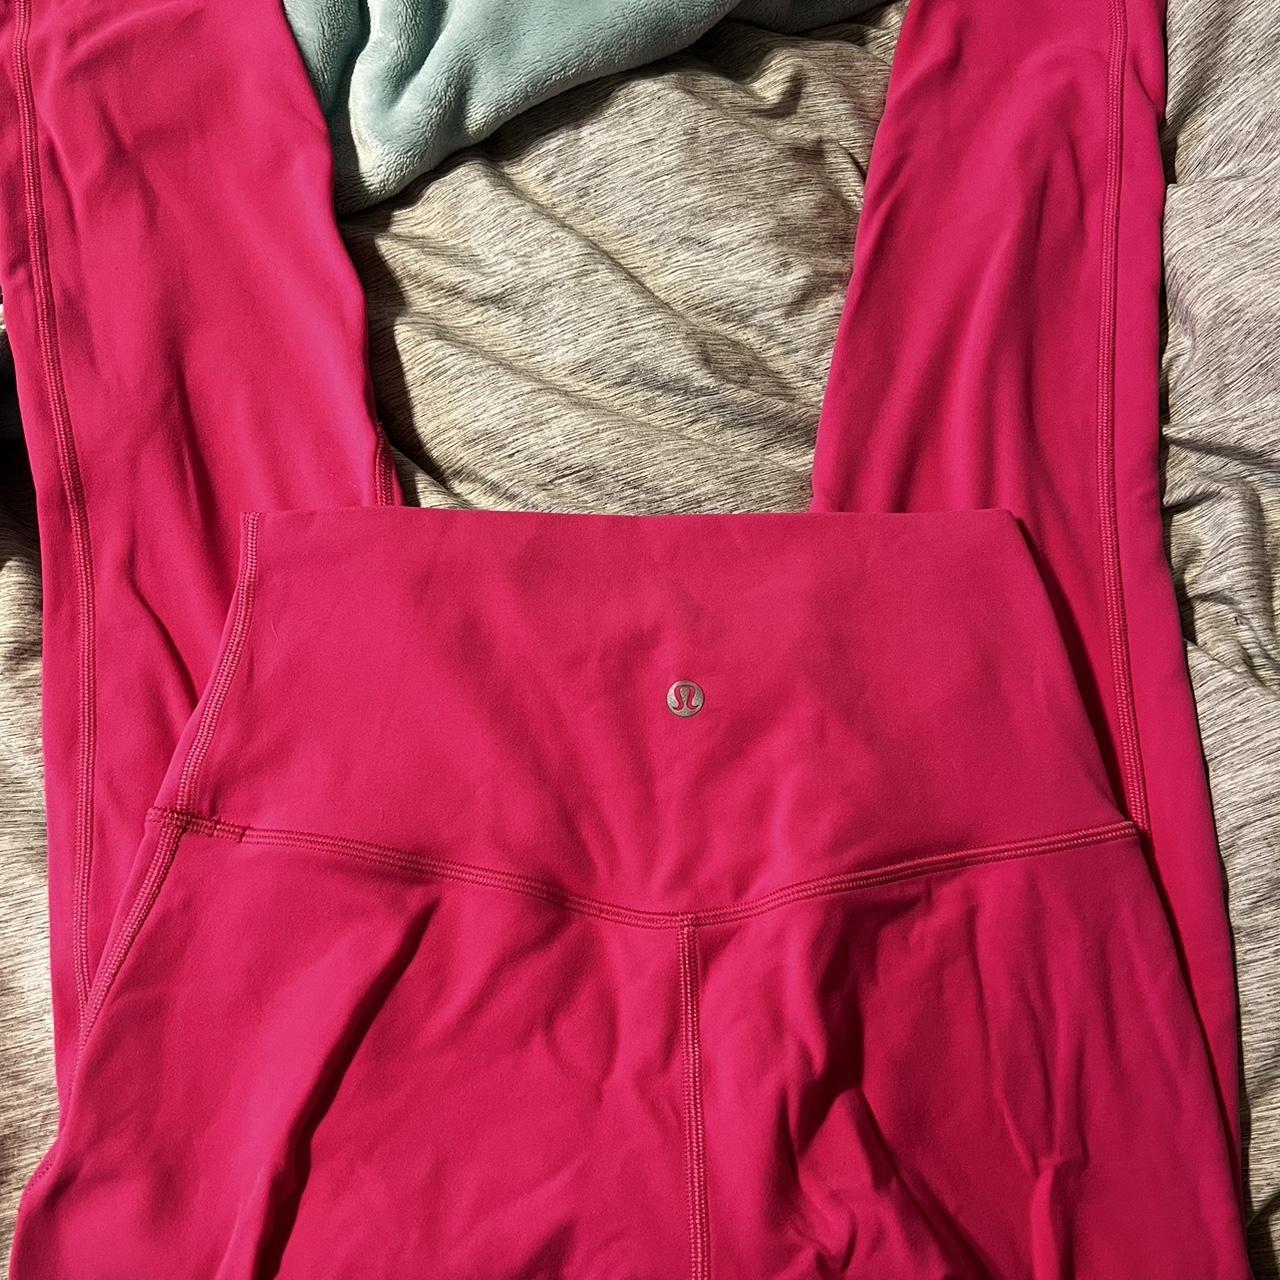 25” Lululemon sonic pink align leggings